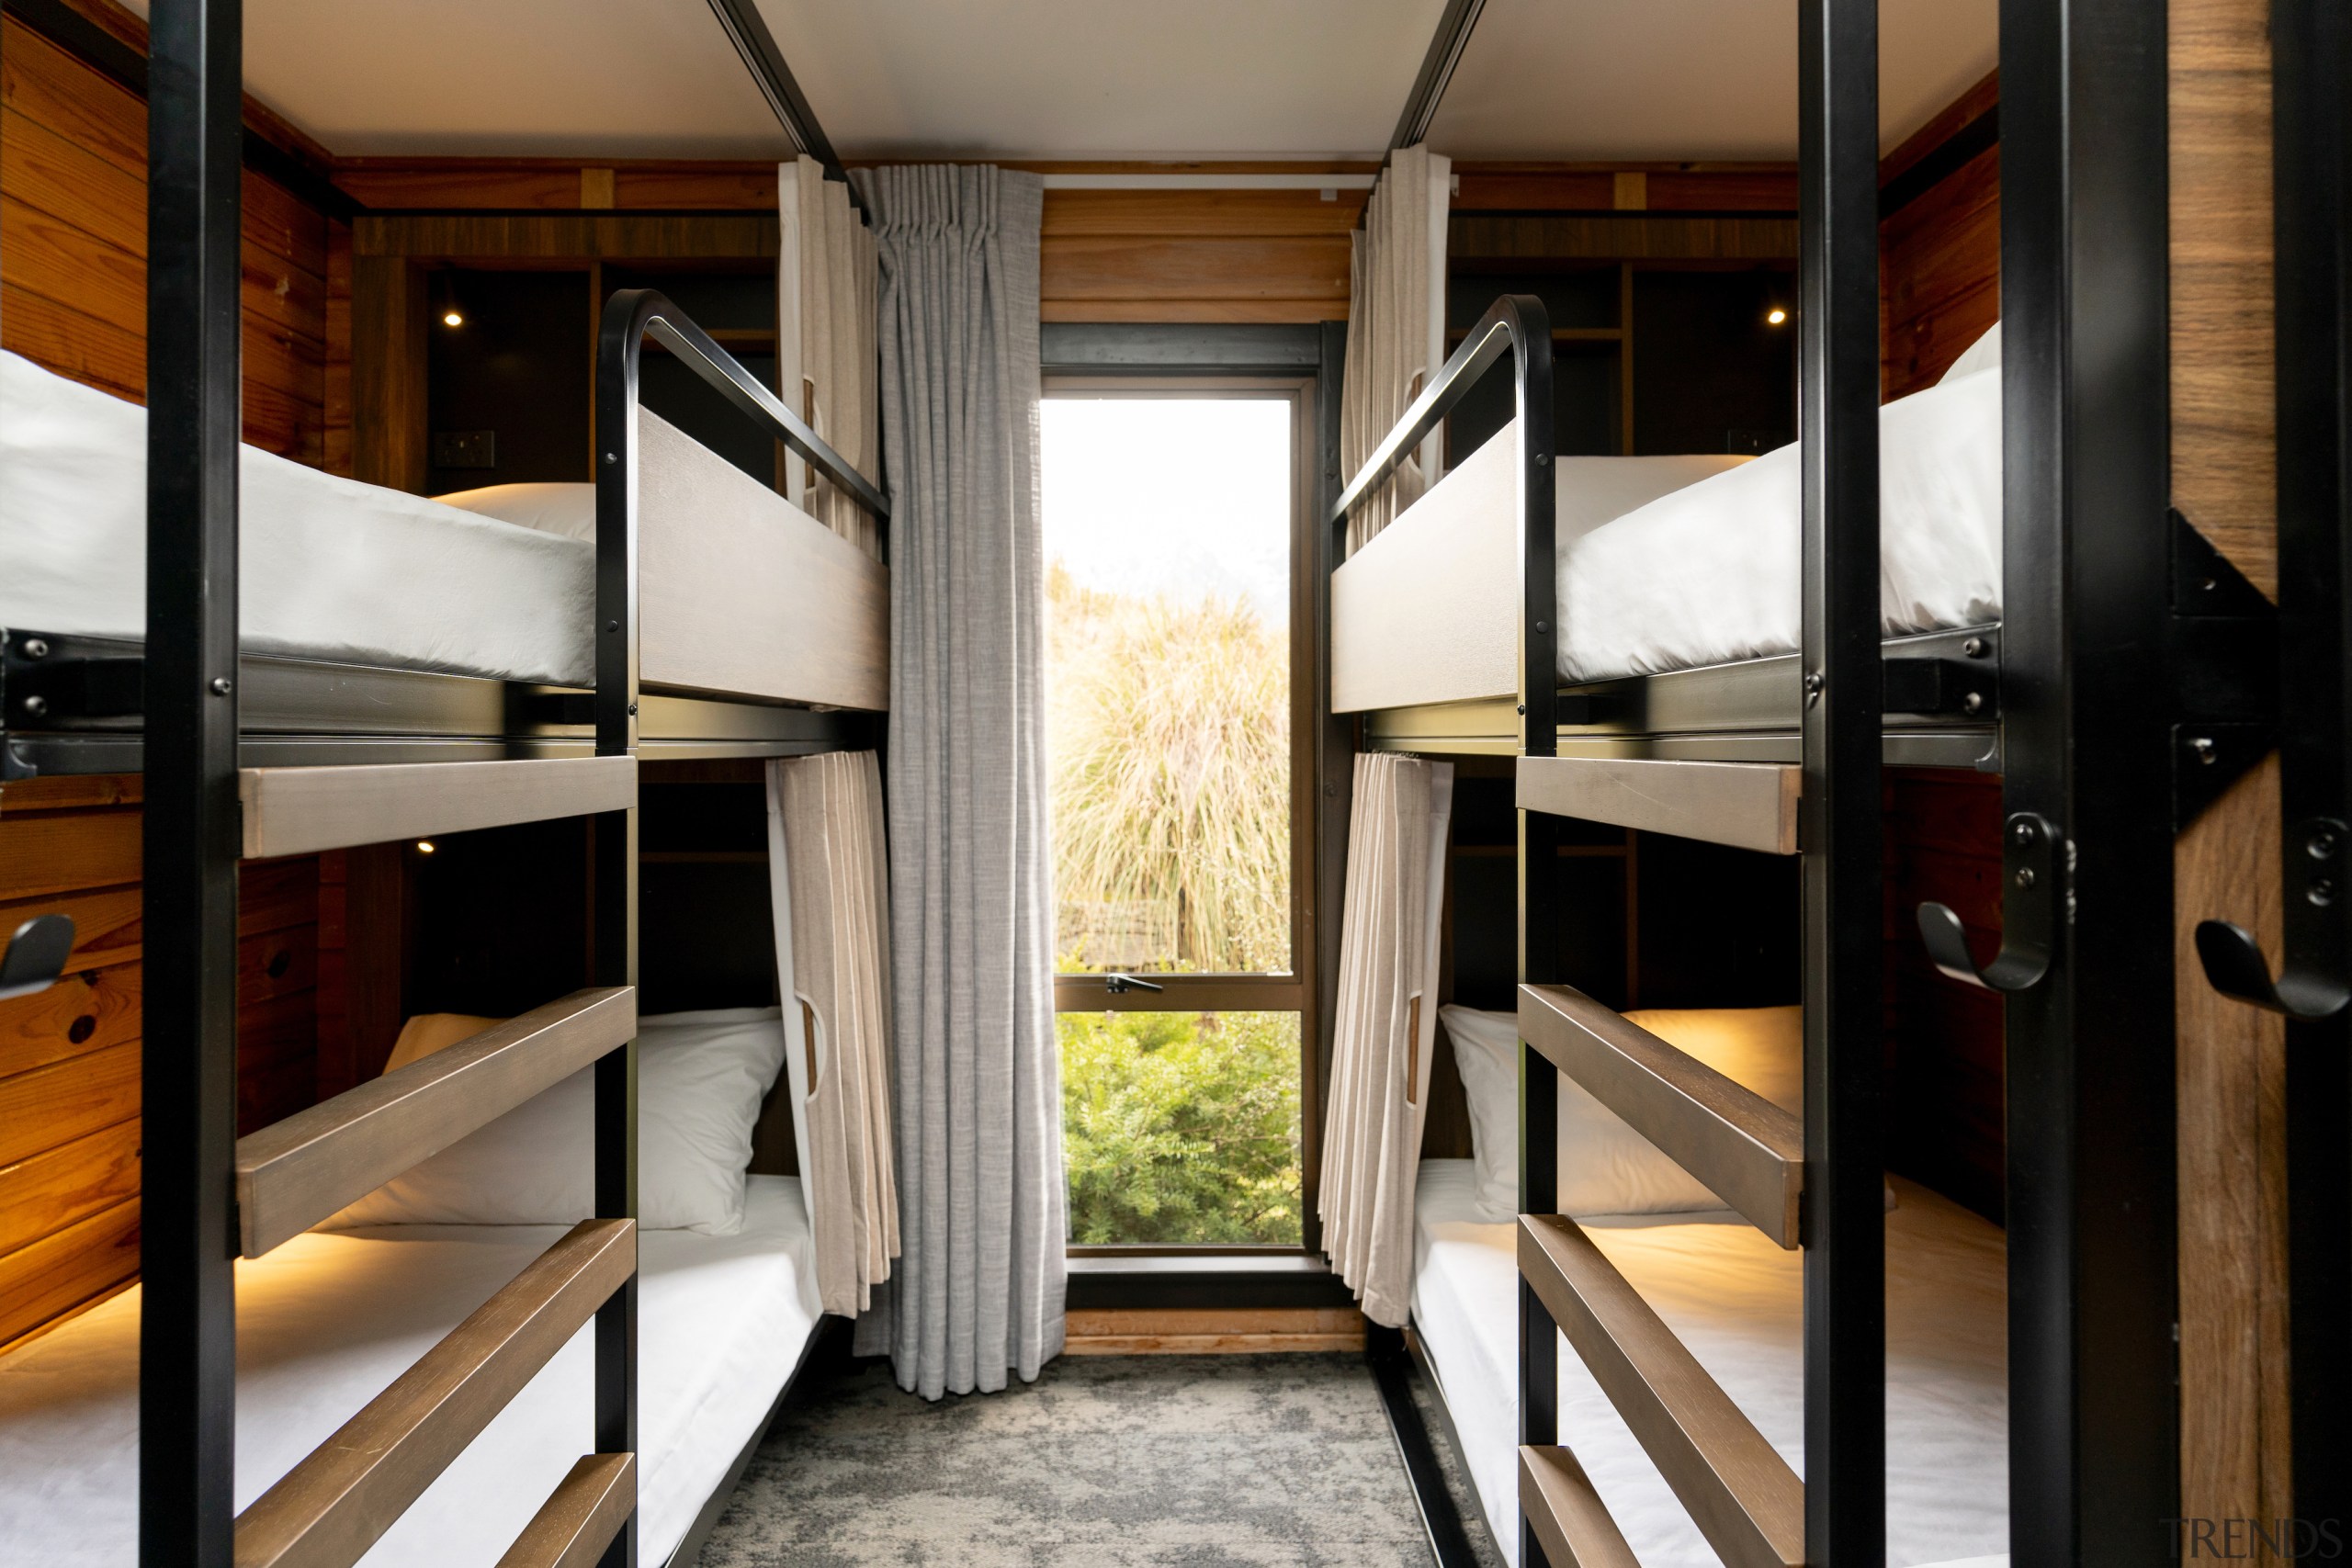 Shared room design. - Design driven hostels cater 